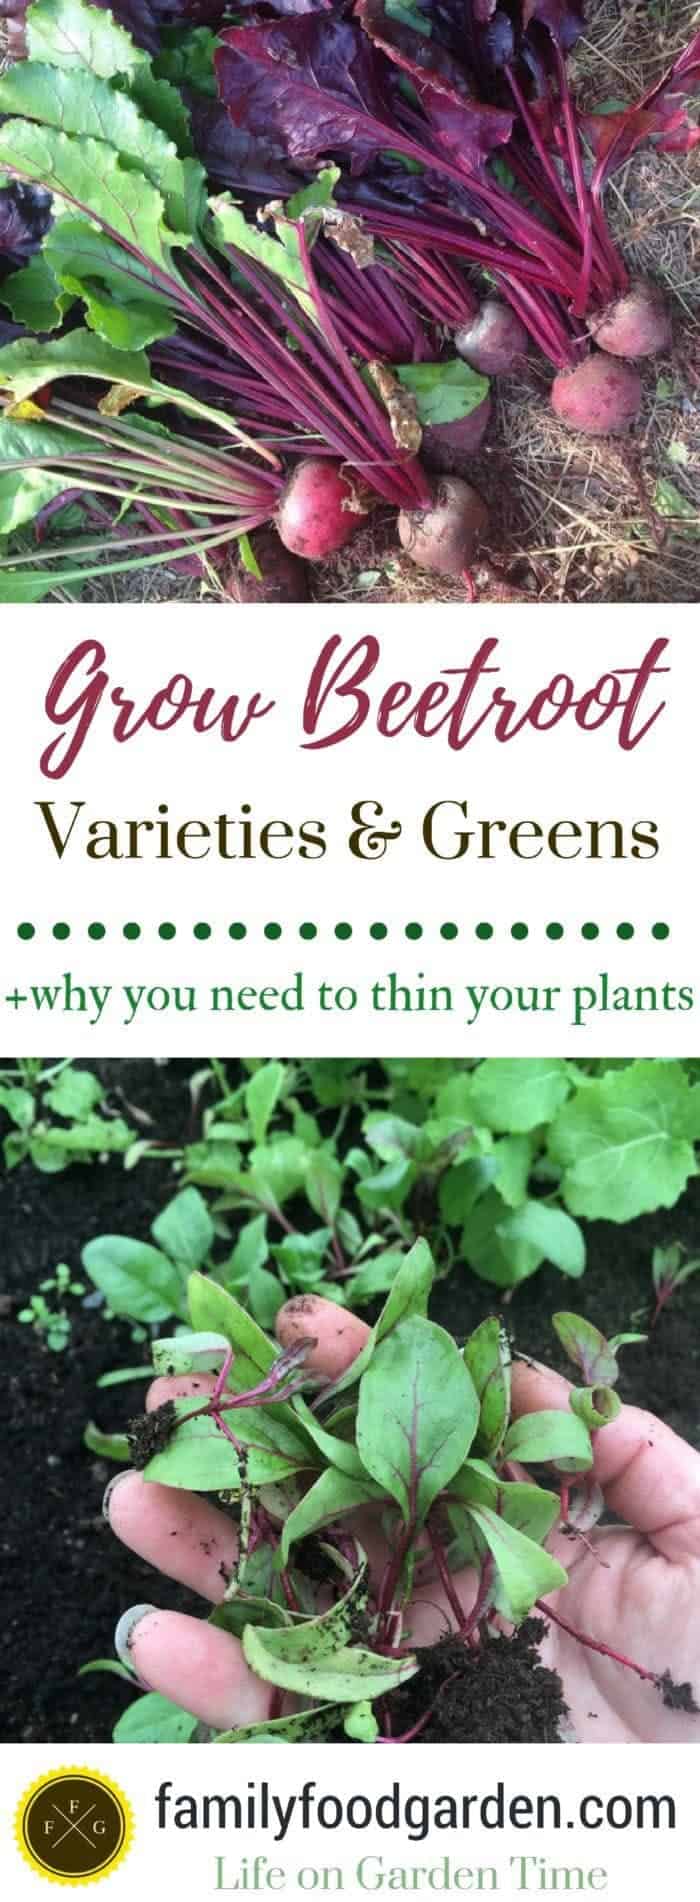 Learn how to grow beetroot + beet varieties